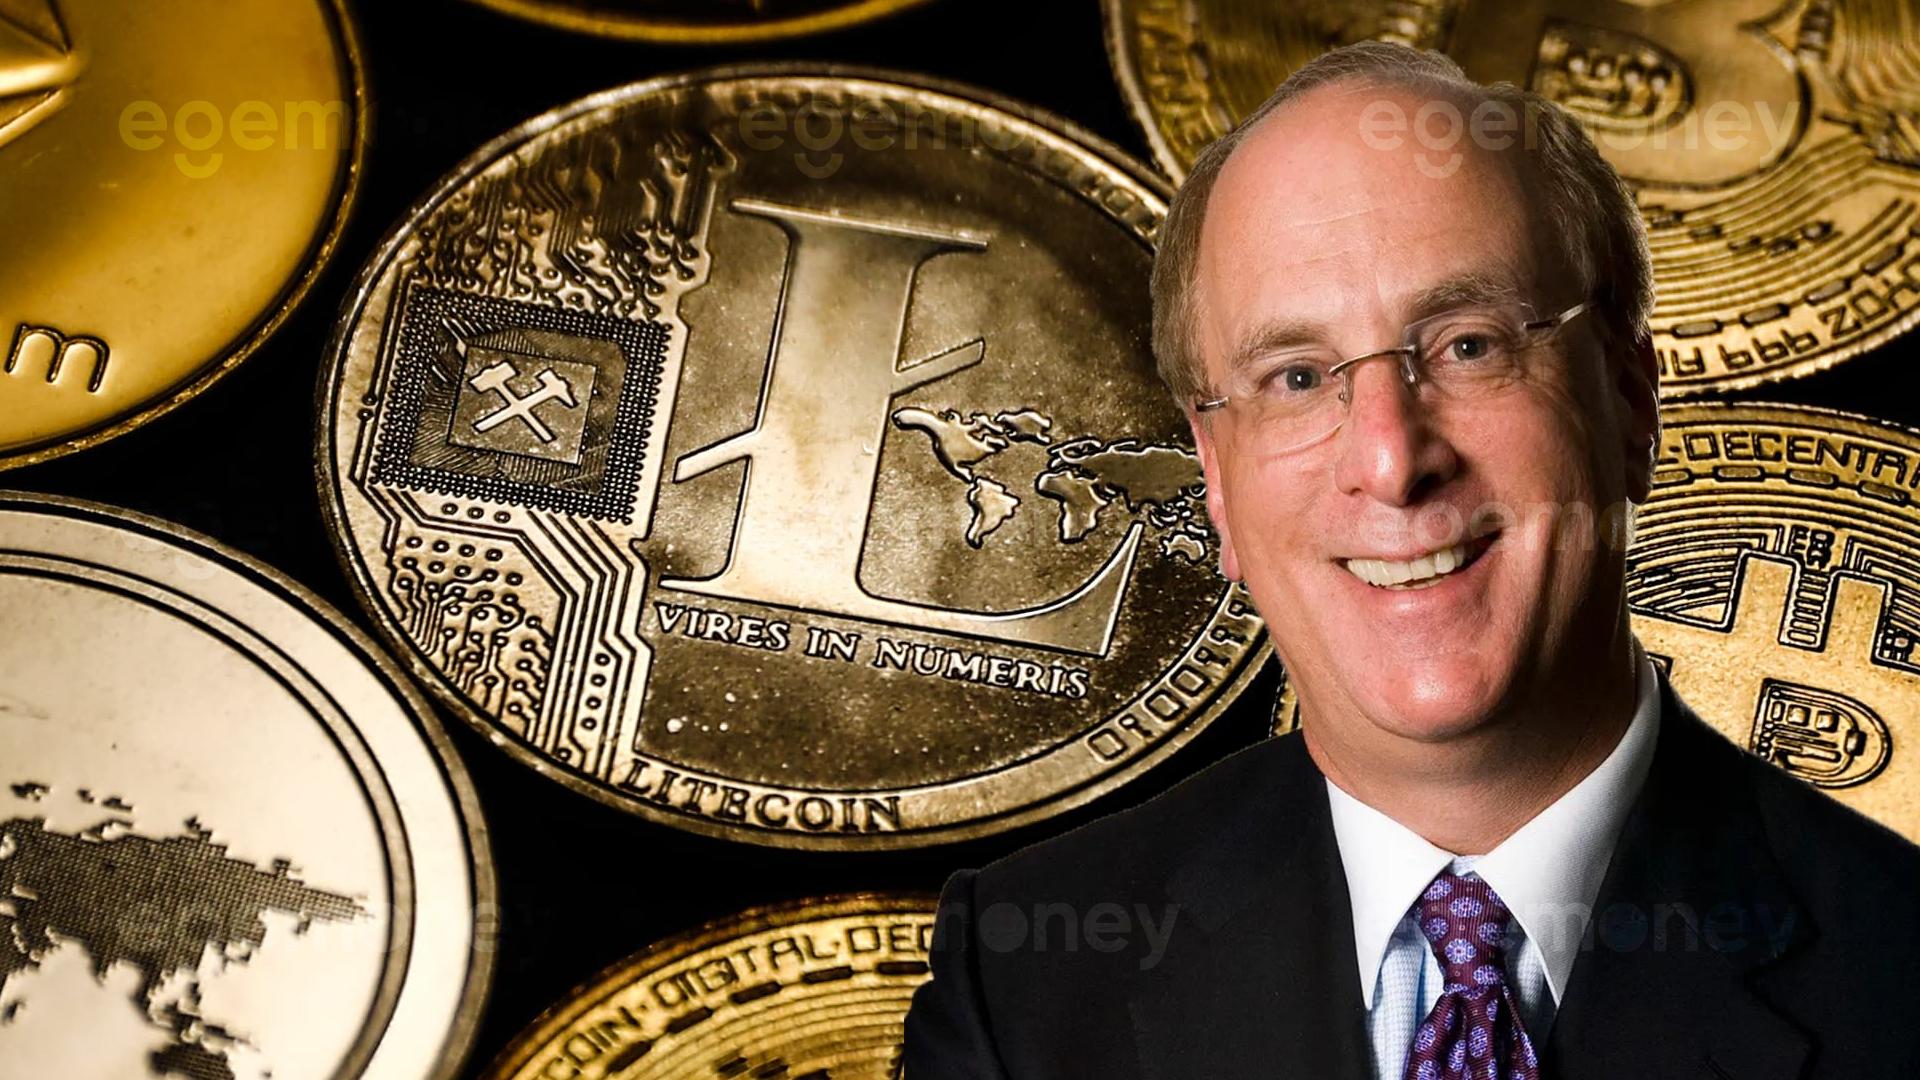 BlackRock CEO’su Larry Fink, Kriptoyu ‘Altını Dijitalleştirmek’ Olarak Nitelendiriyor; Bitcoin’i ‘Uluslararası Bir Varlık’ Olarak Övüyor